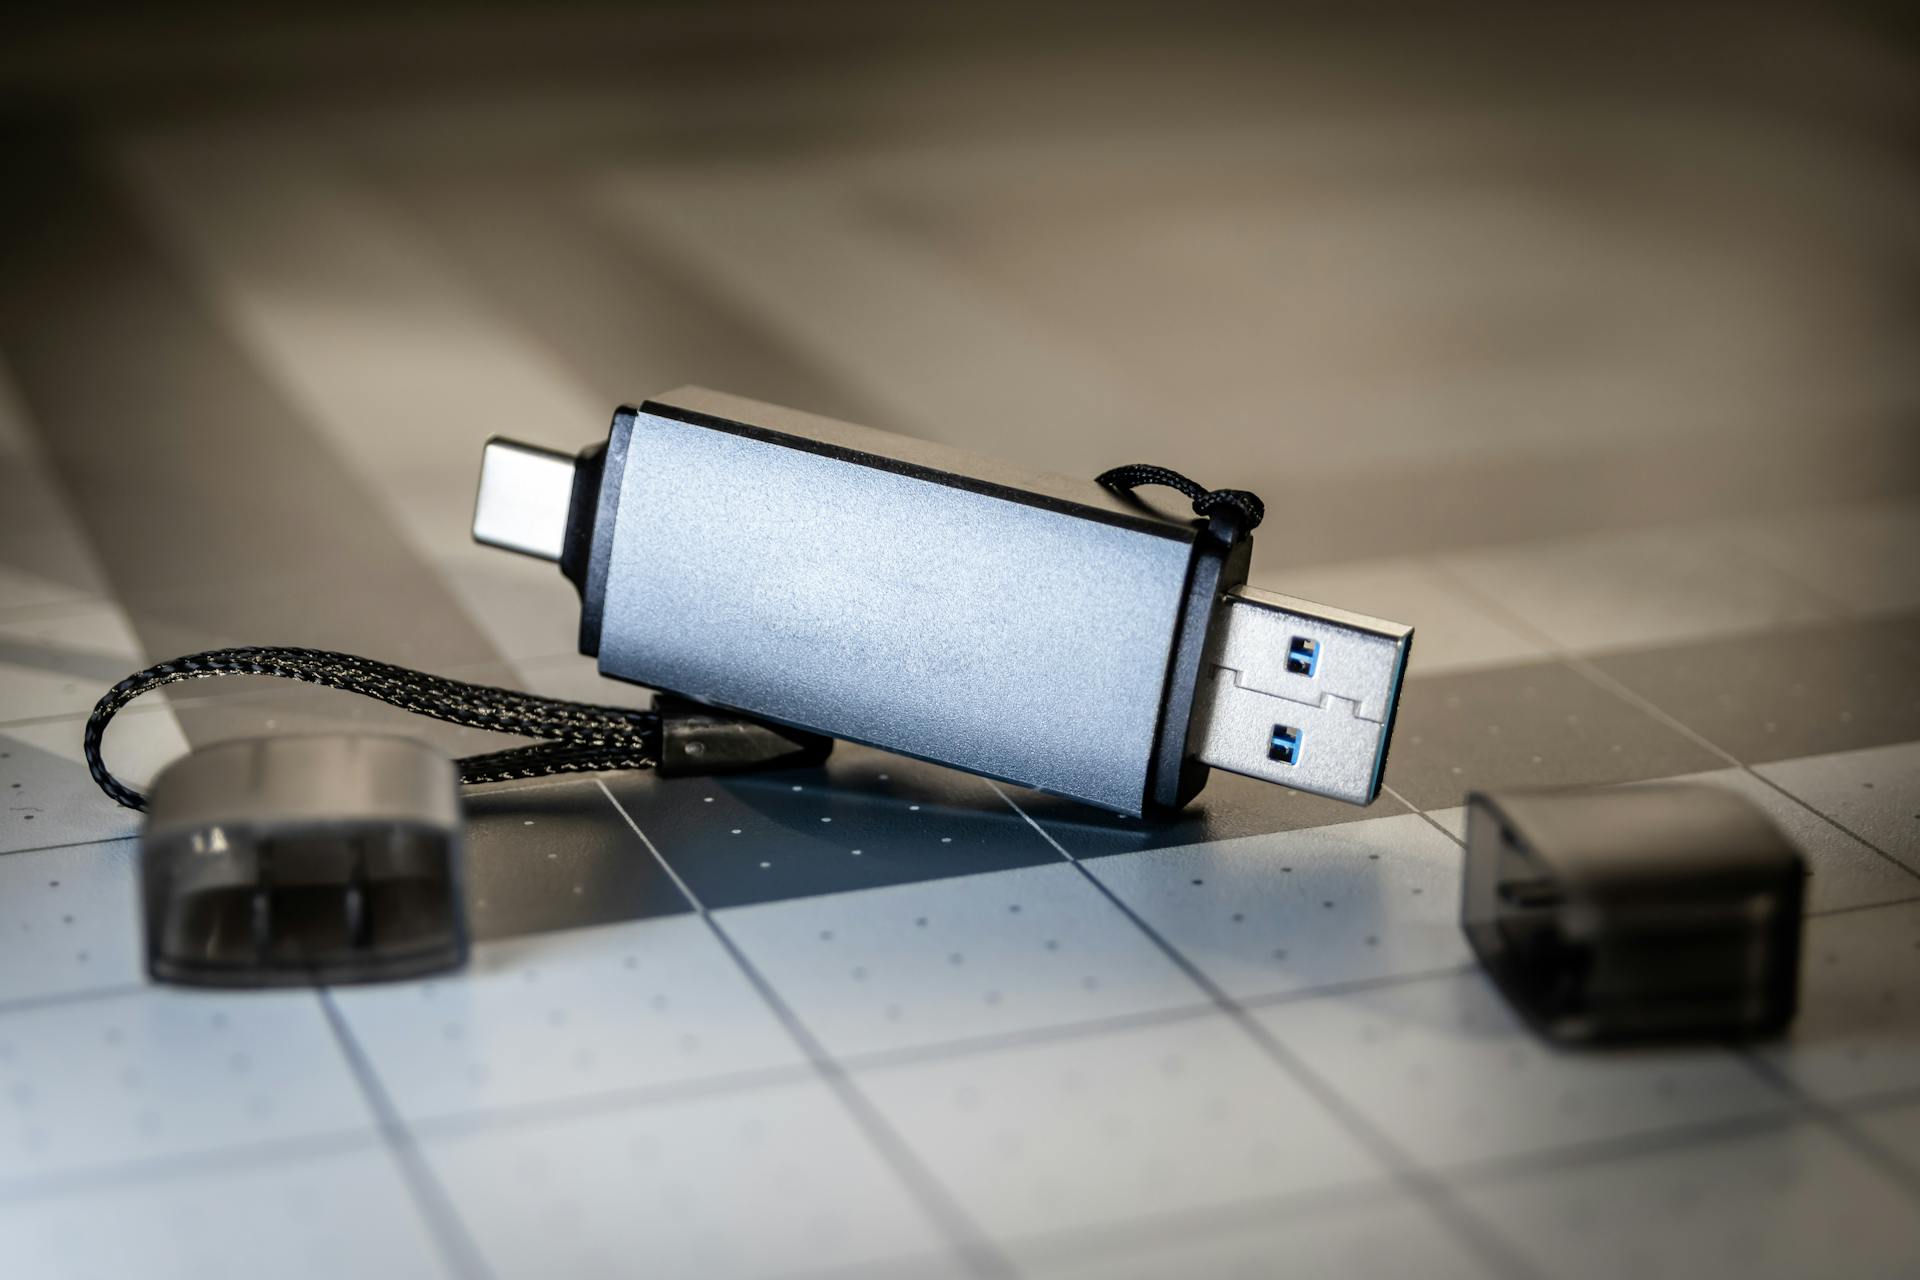 A flash drive | Source: Pexels